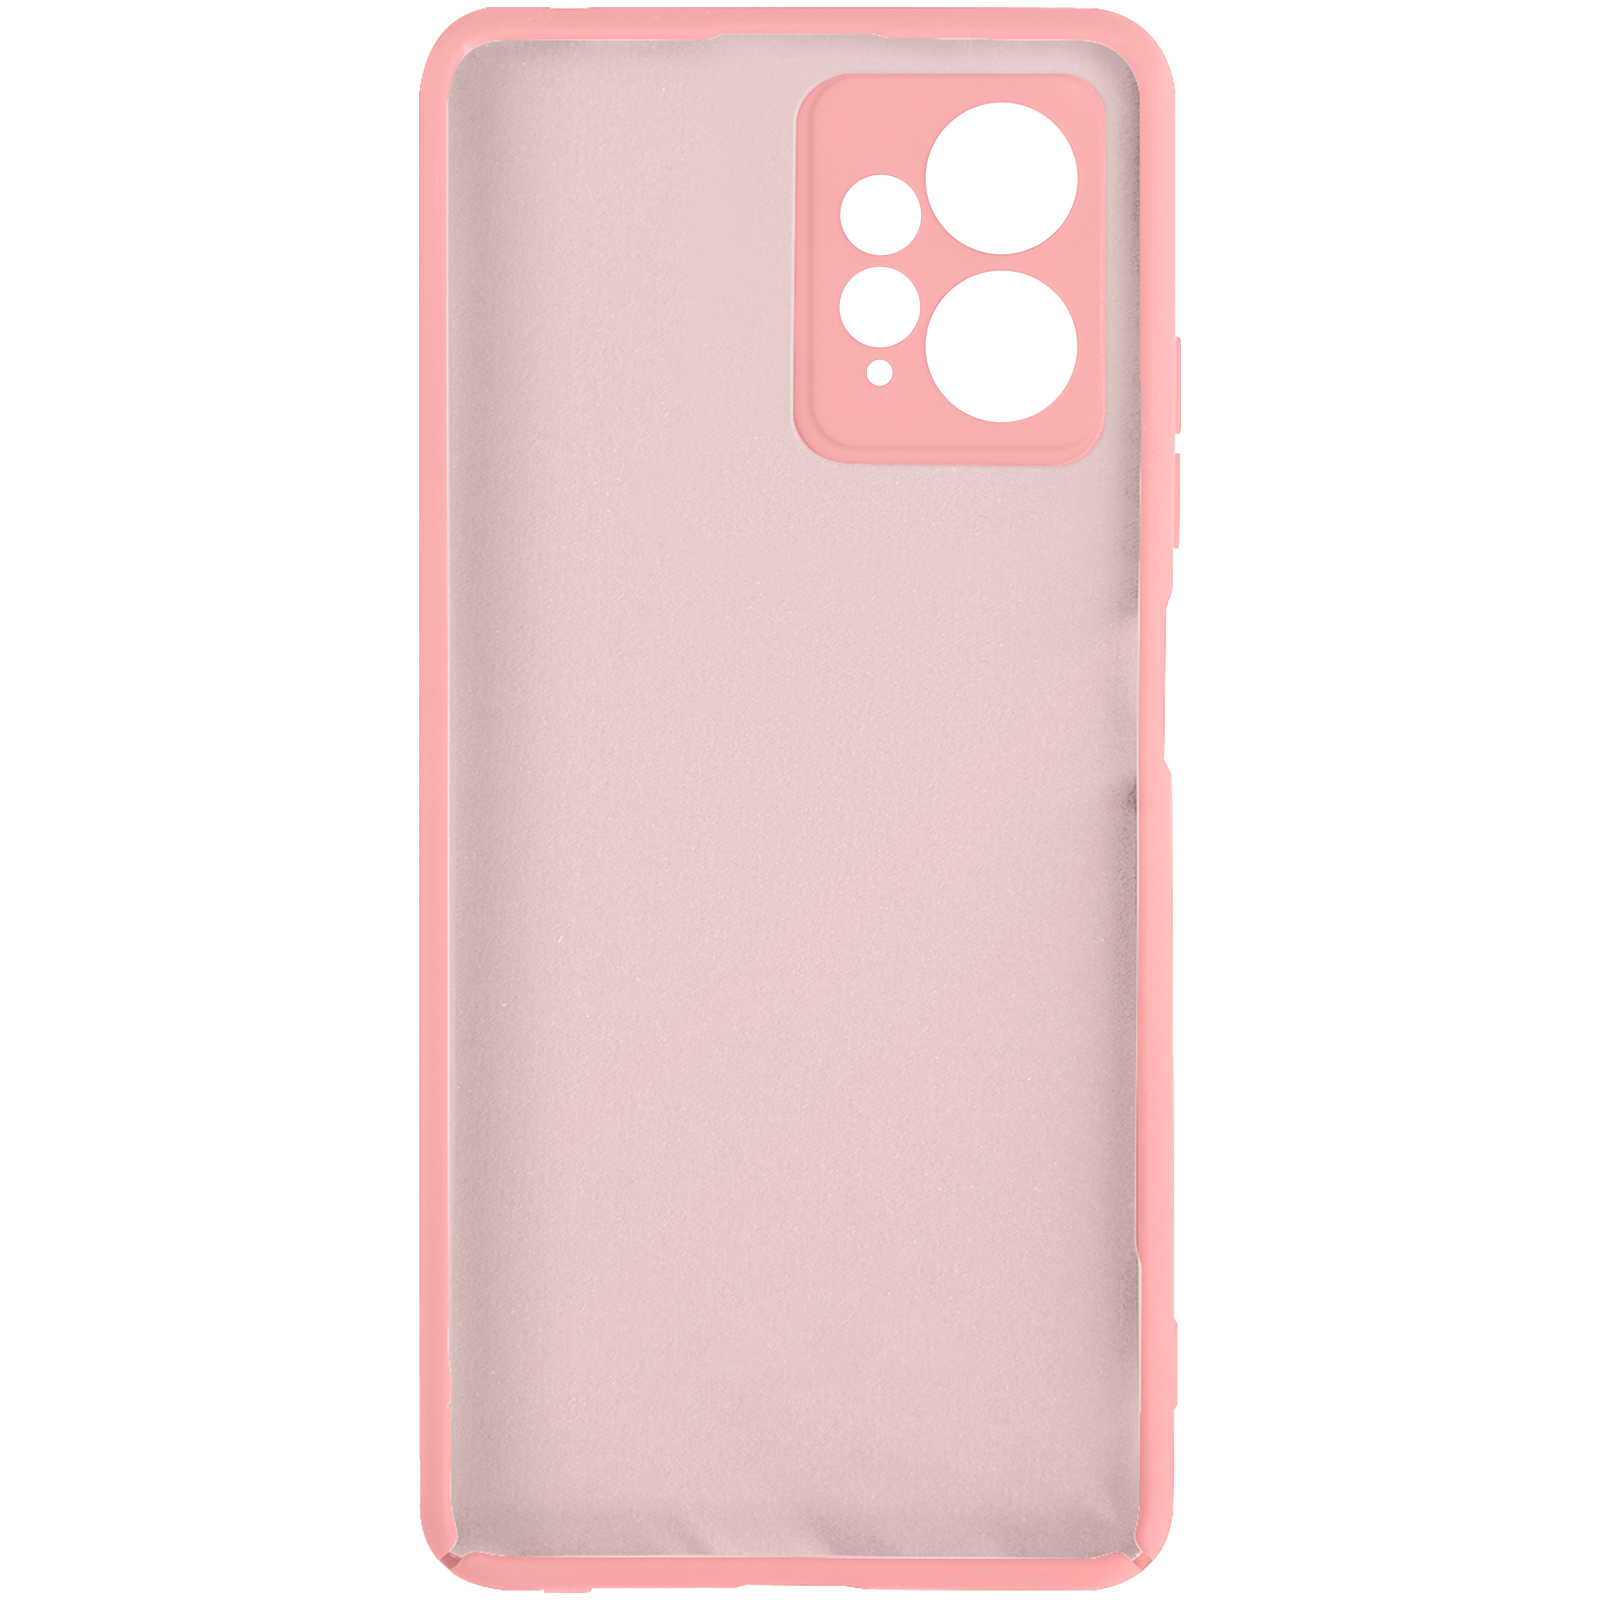 Carcasa COOL para Xiaomi Redmi 12 Cover Rosa